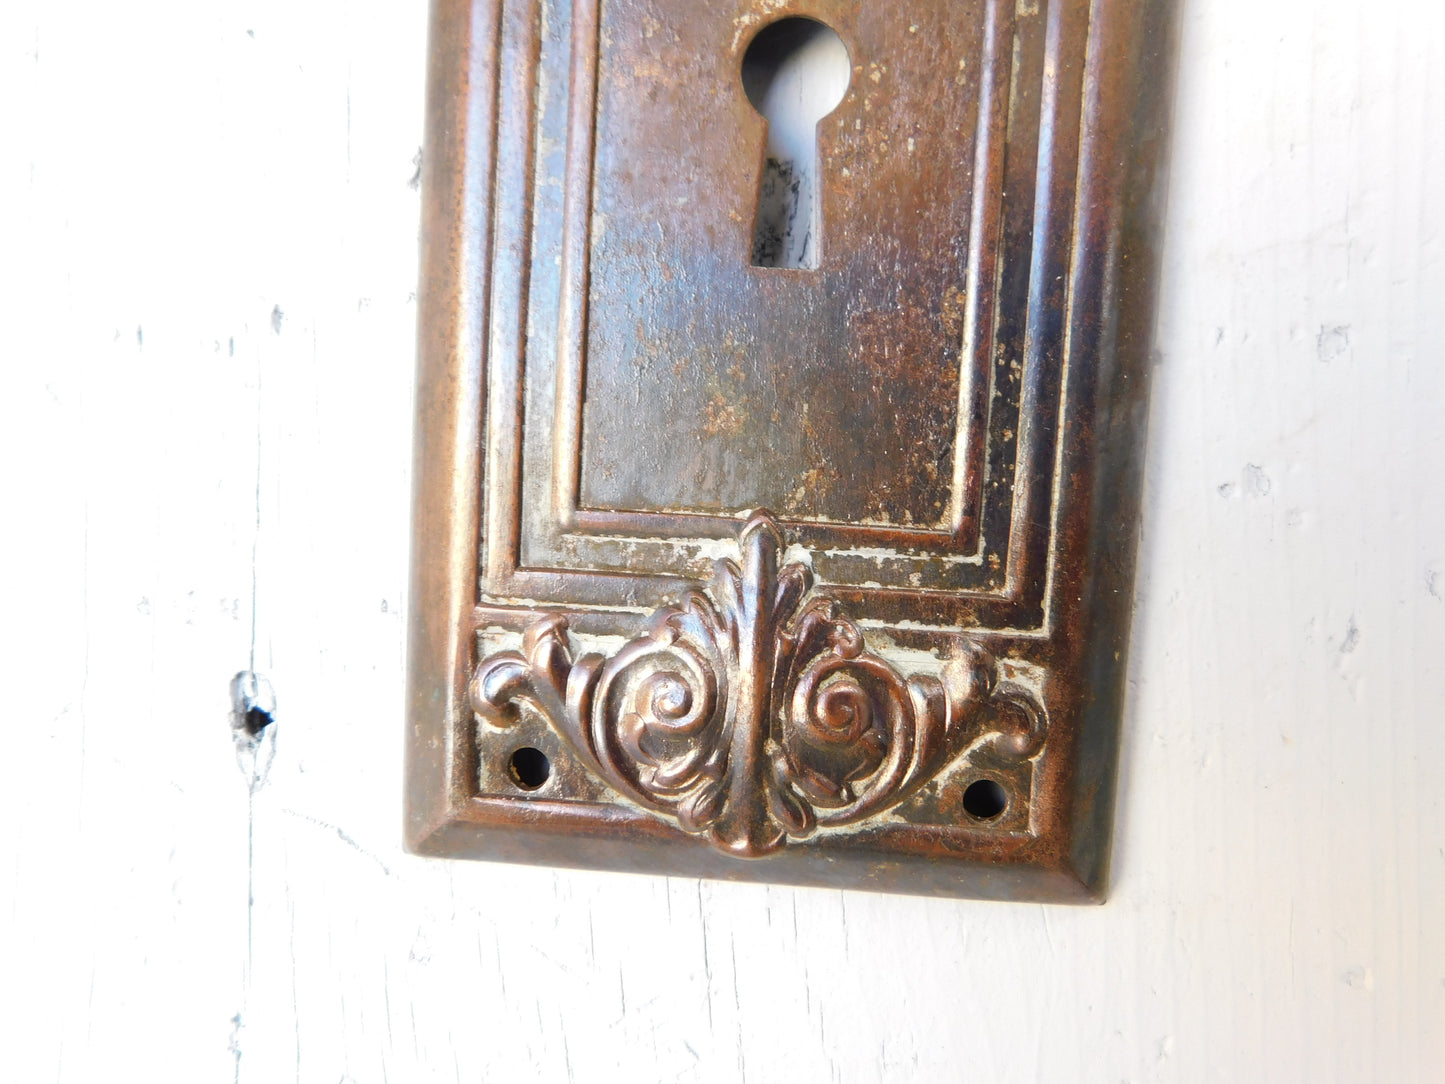 Locris Design Doorknobs and Plate Set, Antique Flower Design Bronze Door Hardware 021512